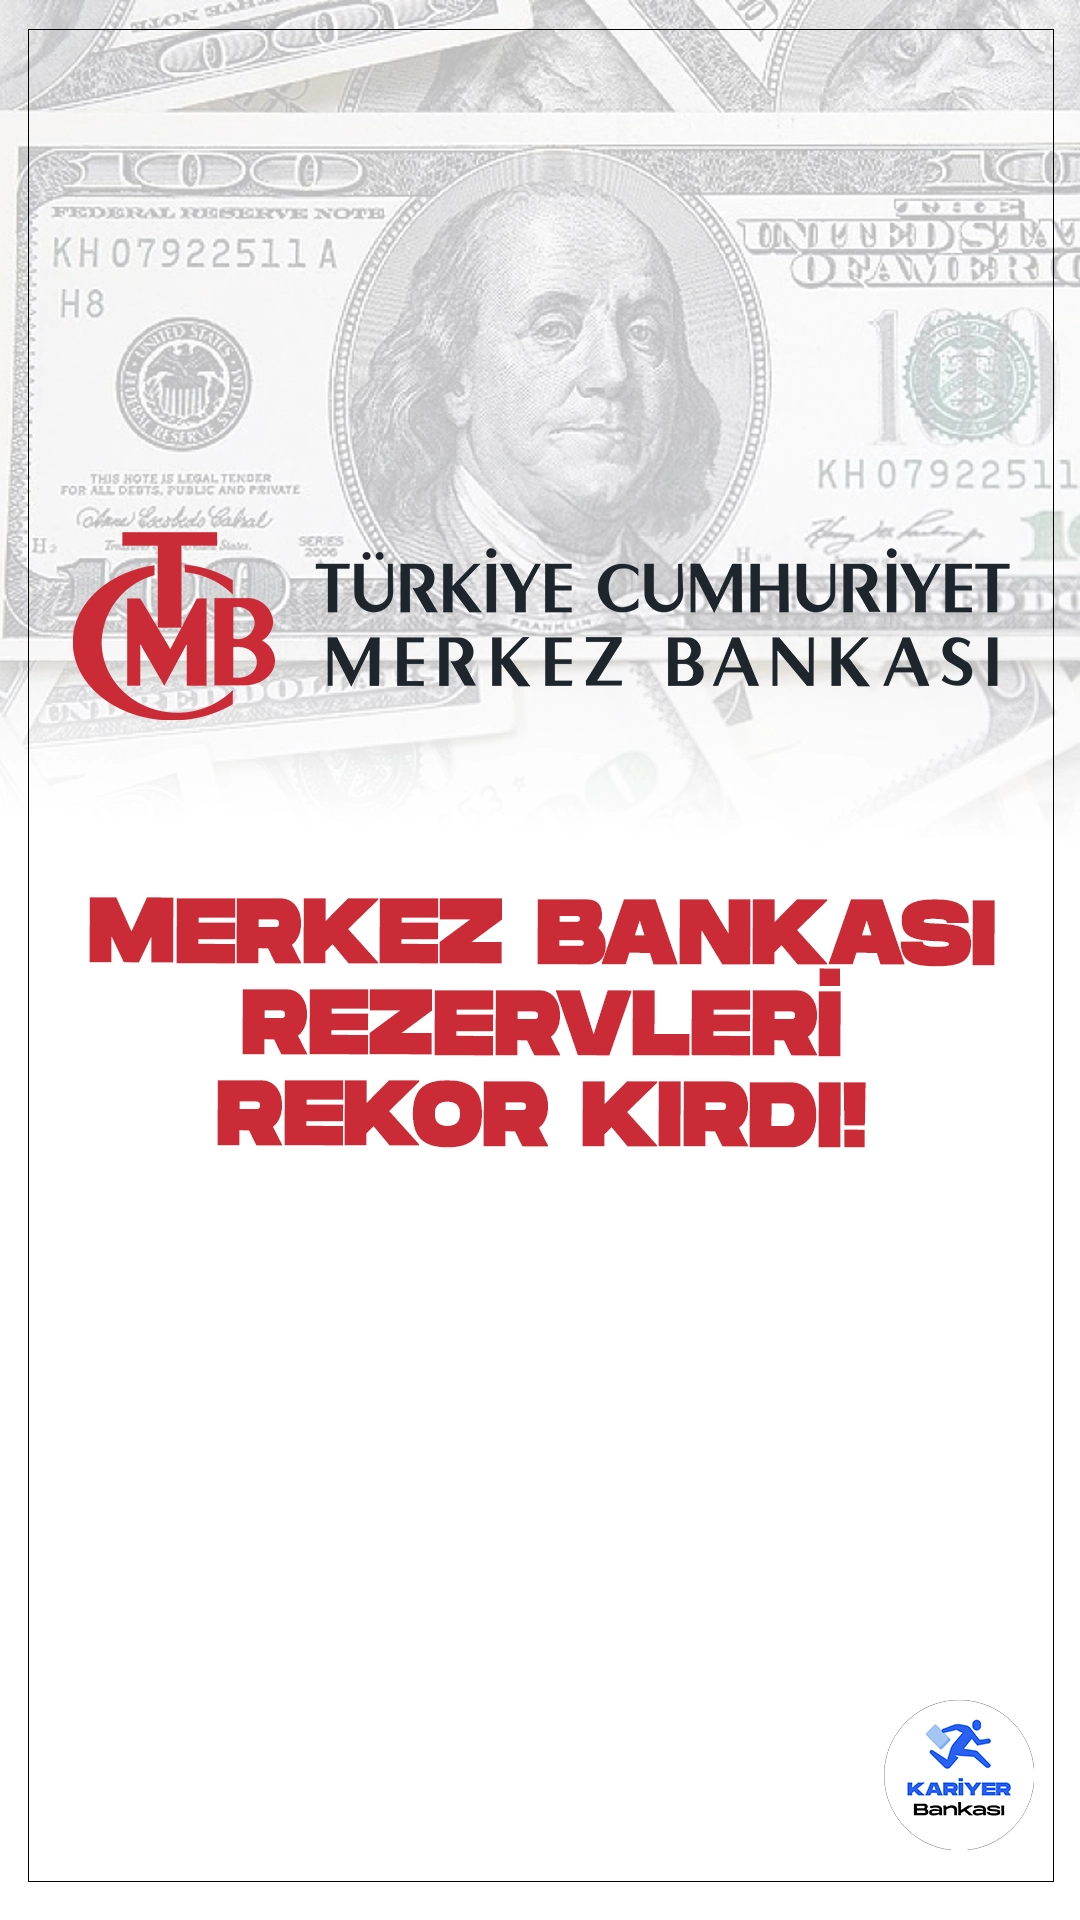 TCMB Toplam Rezervleri Rekor Kırdı.Türkiye Cumhuriyet Merkez Bankası (TCMB) toplam rezervleri, 12 Temmuz haftasında bir önceki haftaya göre 5 milyar 348 milyon dolar artışla 153 milyar 796 milyon dolara çıkarak rekor kırdı.